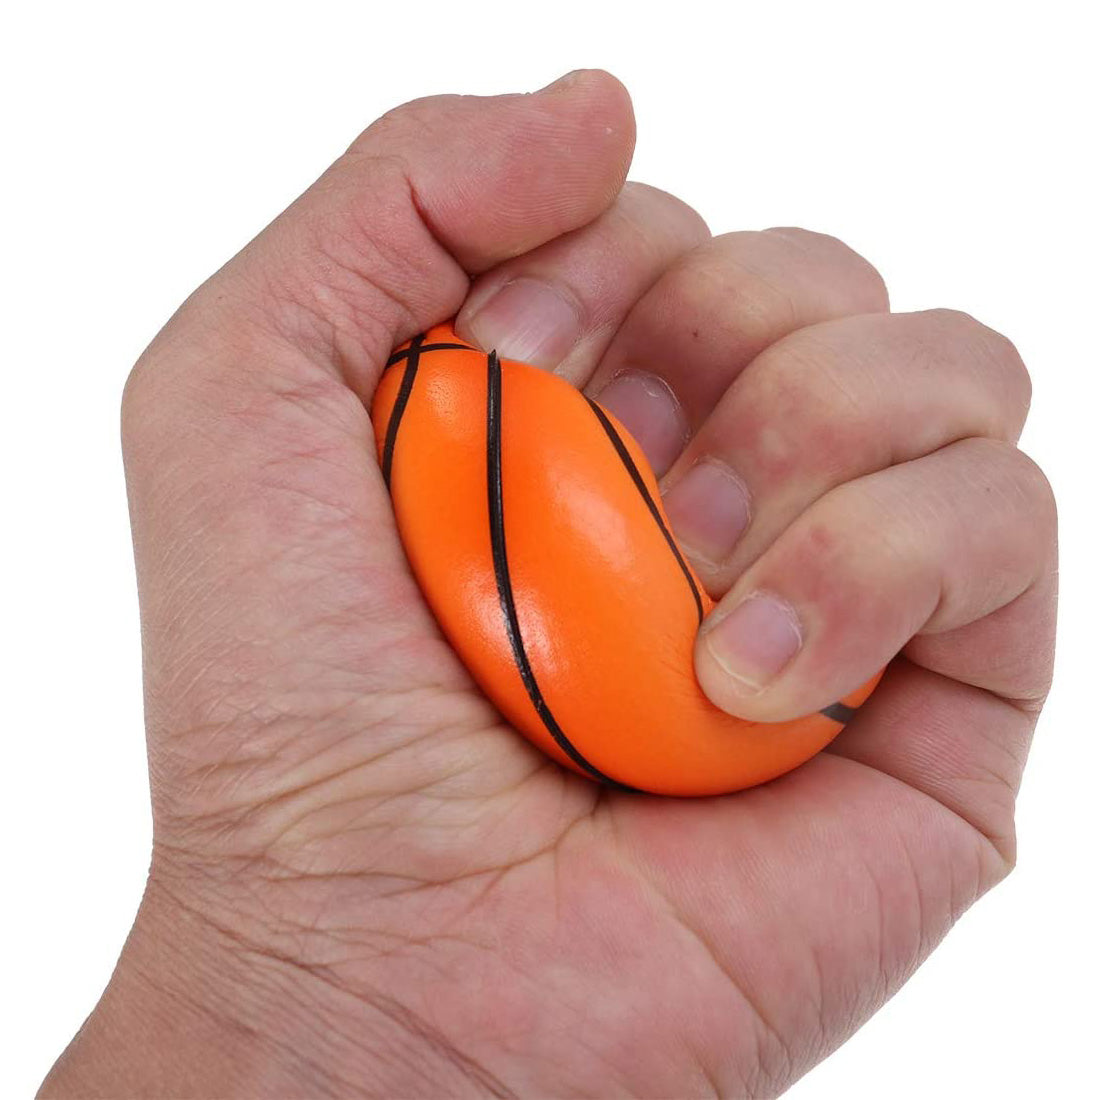 HUSL Bolas de Goma de Rebote, Bolas de deportes de goma suave, pelota para jugar en zona interior y aire libre, diseñado para los niños-Diámetro approx.6.3 cm(Futbol en multicolor)